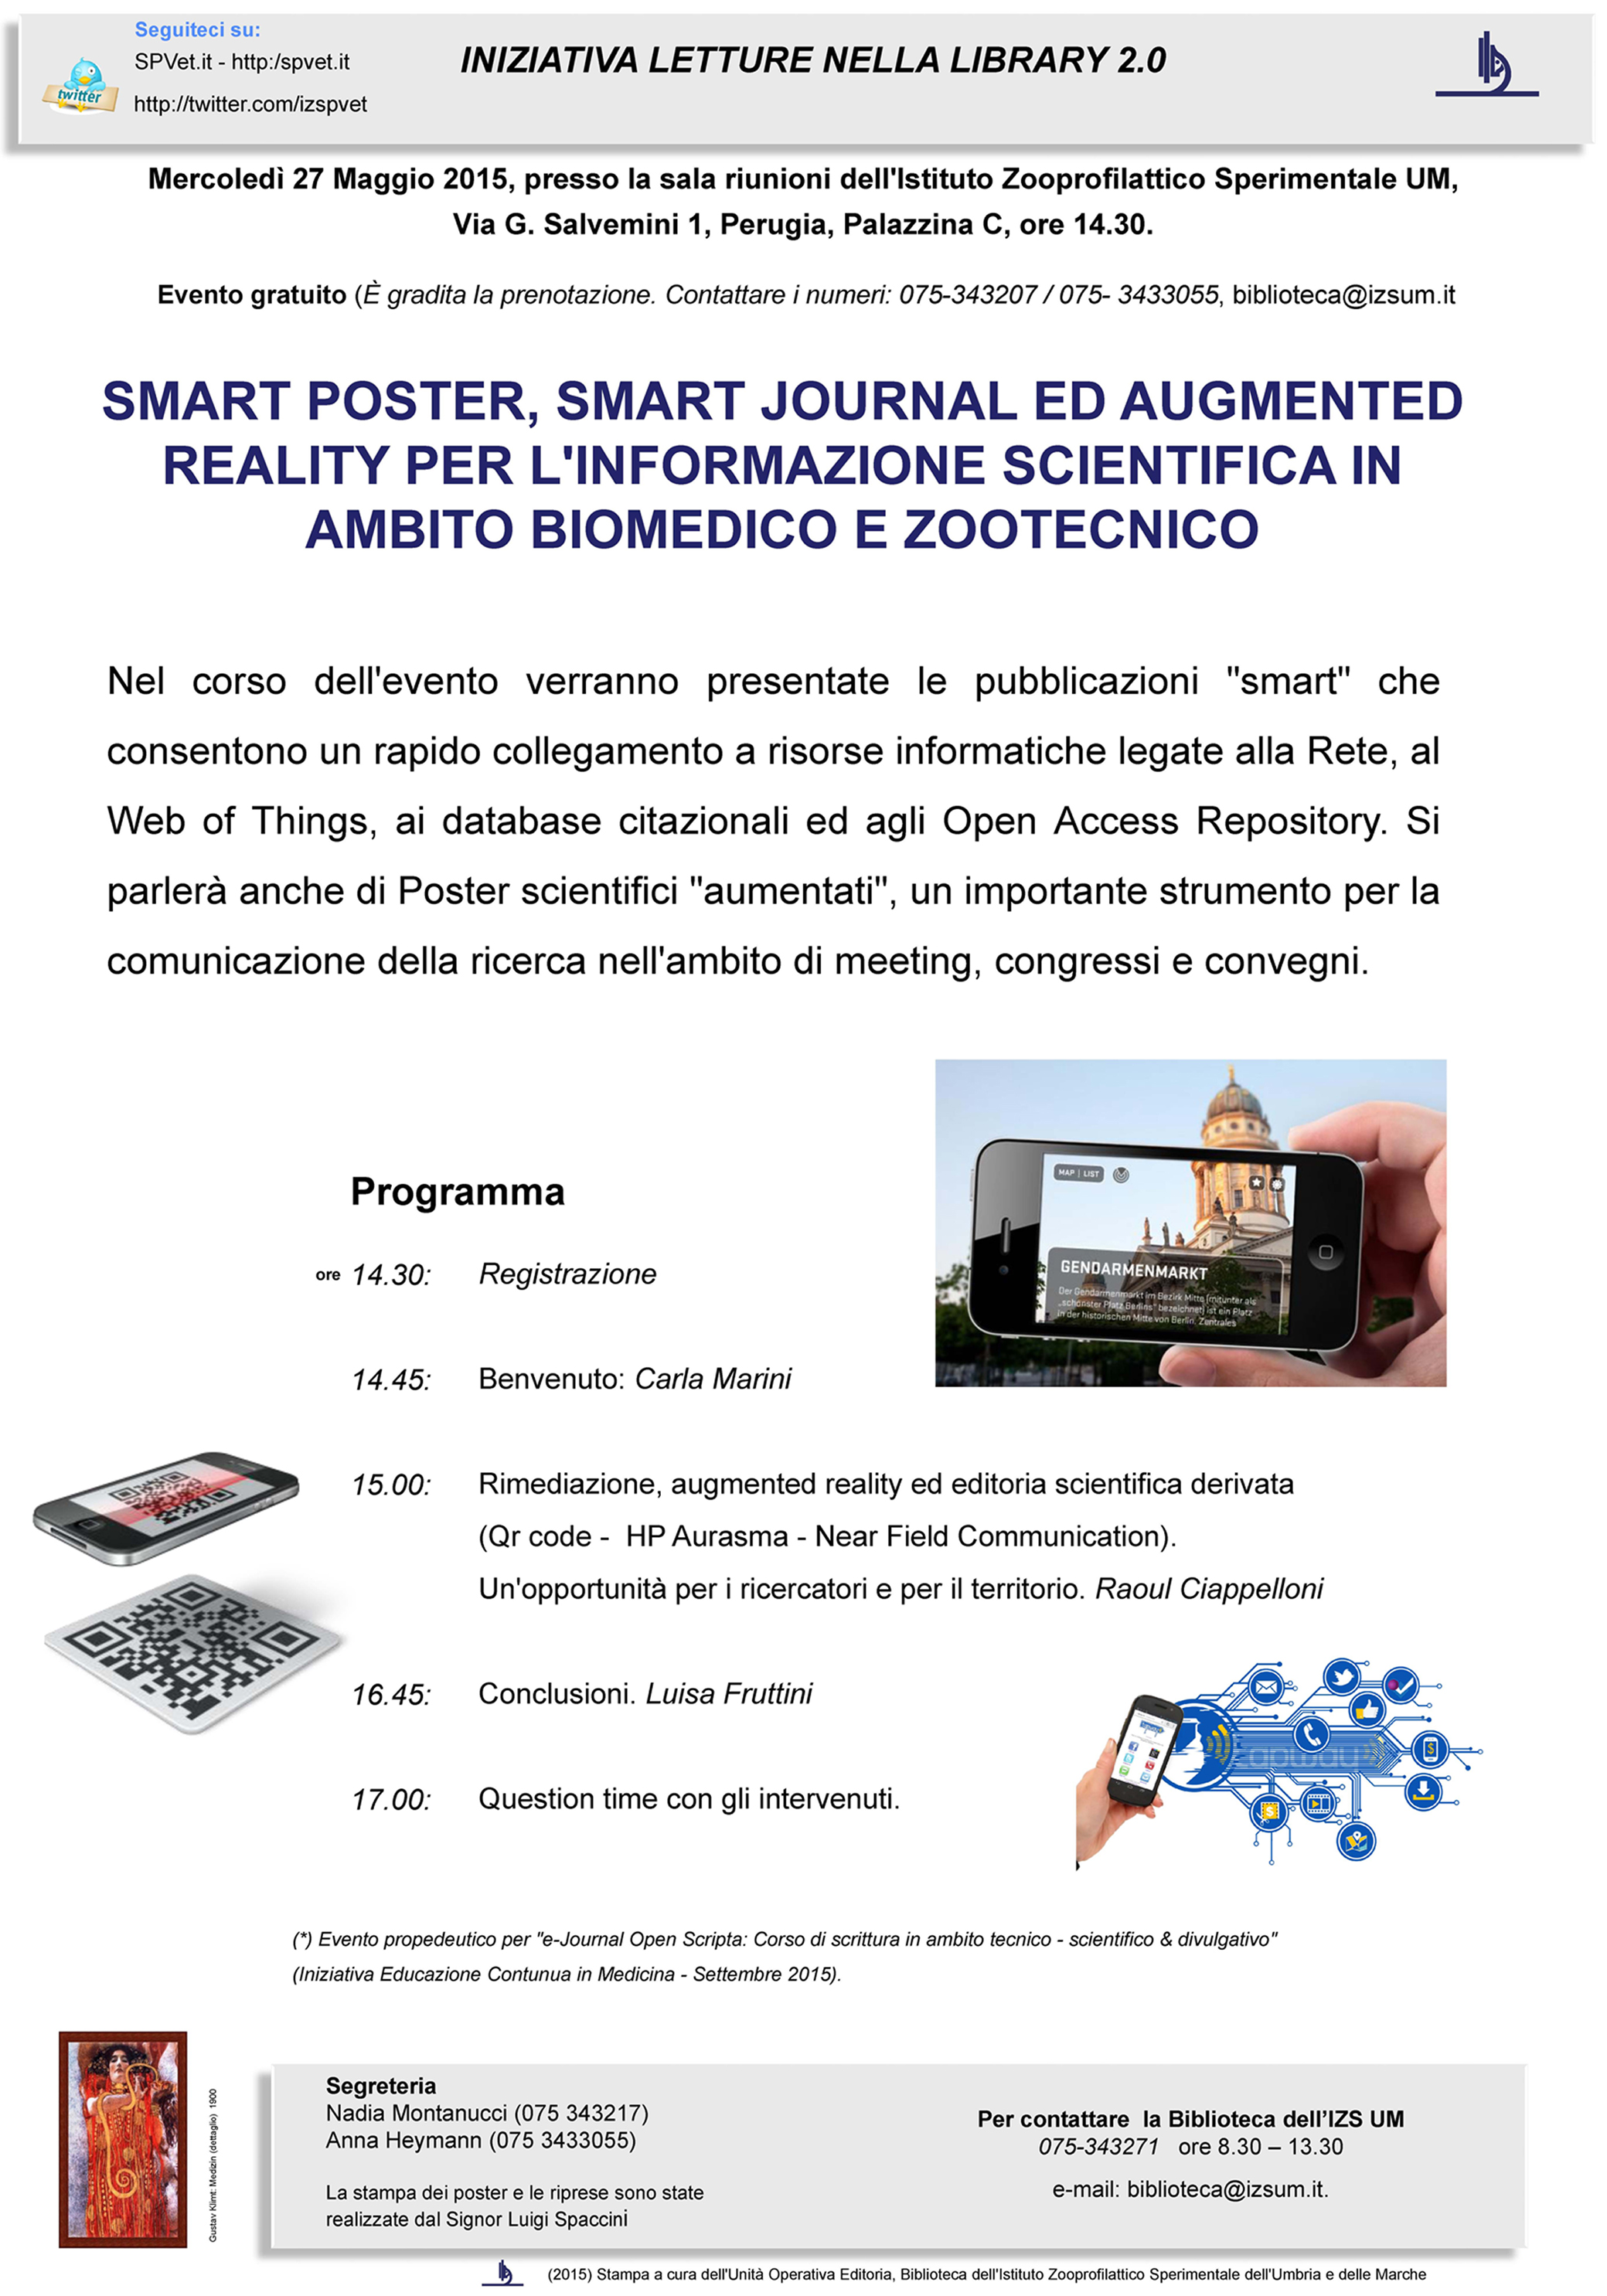 Lettura in biblioteca su Smart poster e augmented reality in ambito biomedico del 27 Maggio 2015 